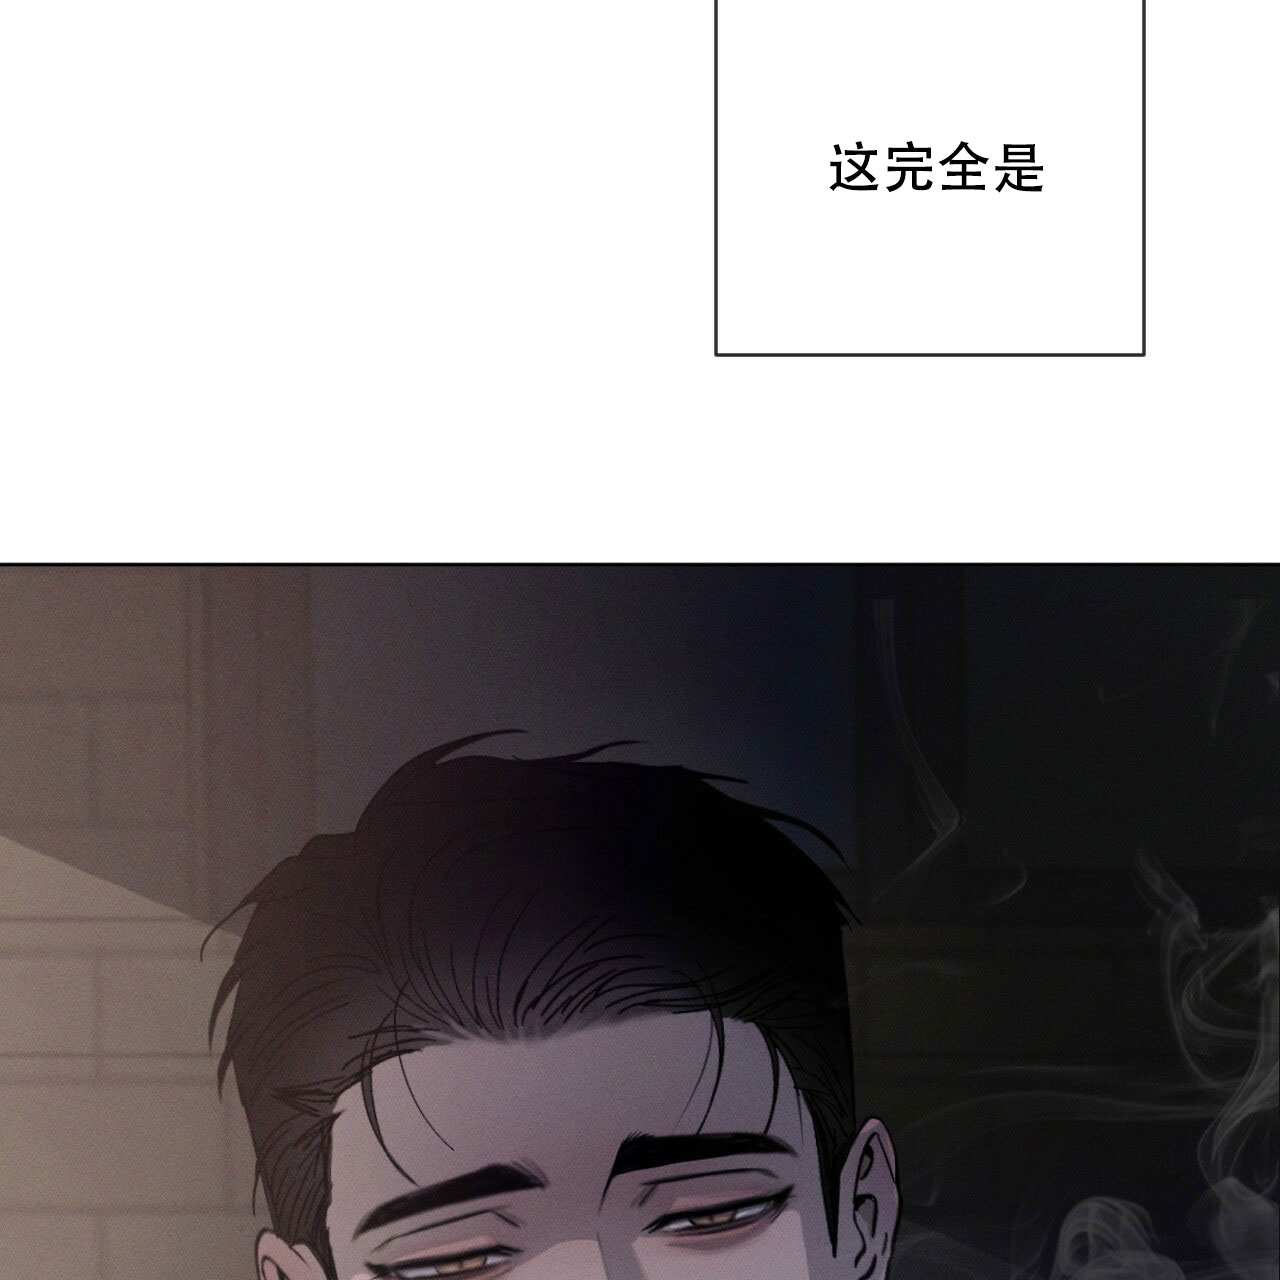 啵乐官网免费漫画7